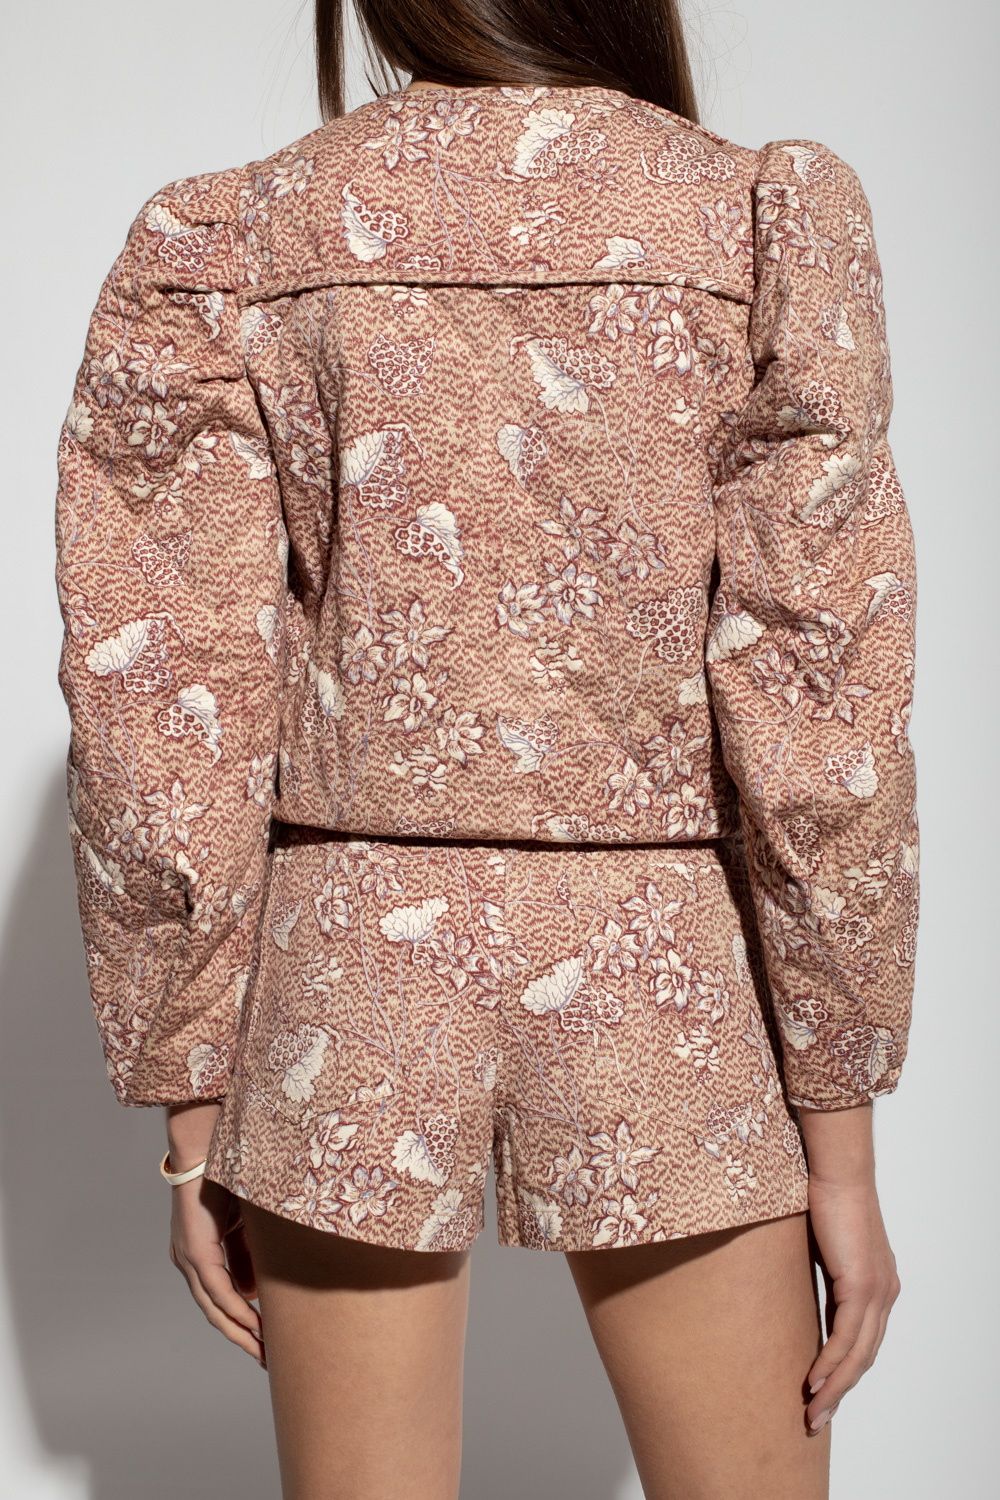 Ulla Johnson ‘Syd’ patterned Camden jacket